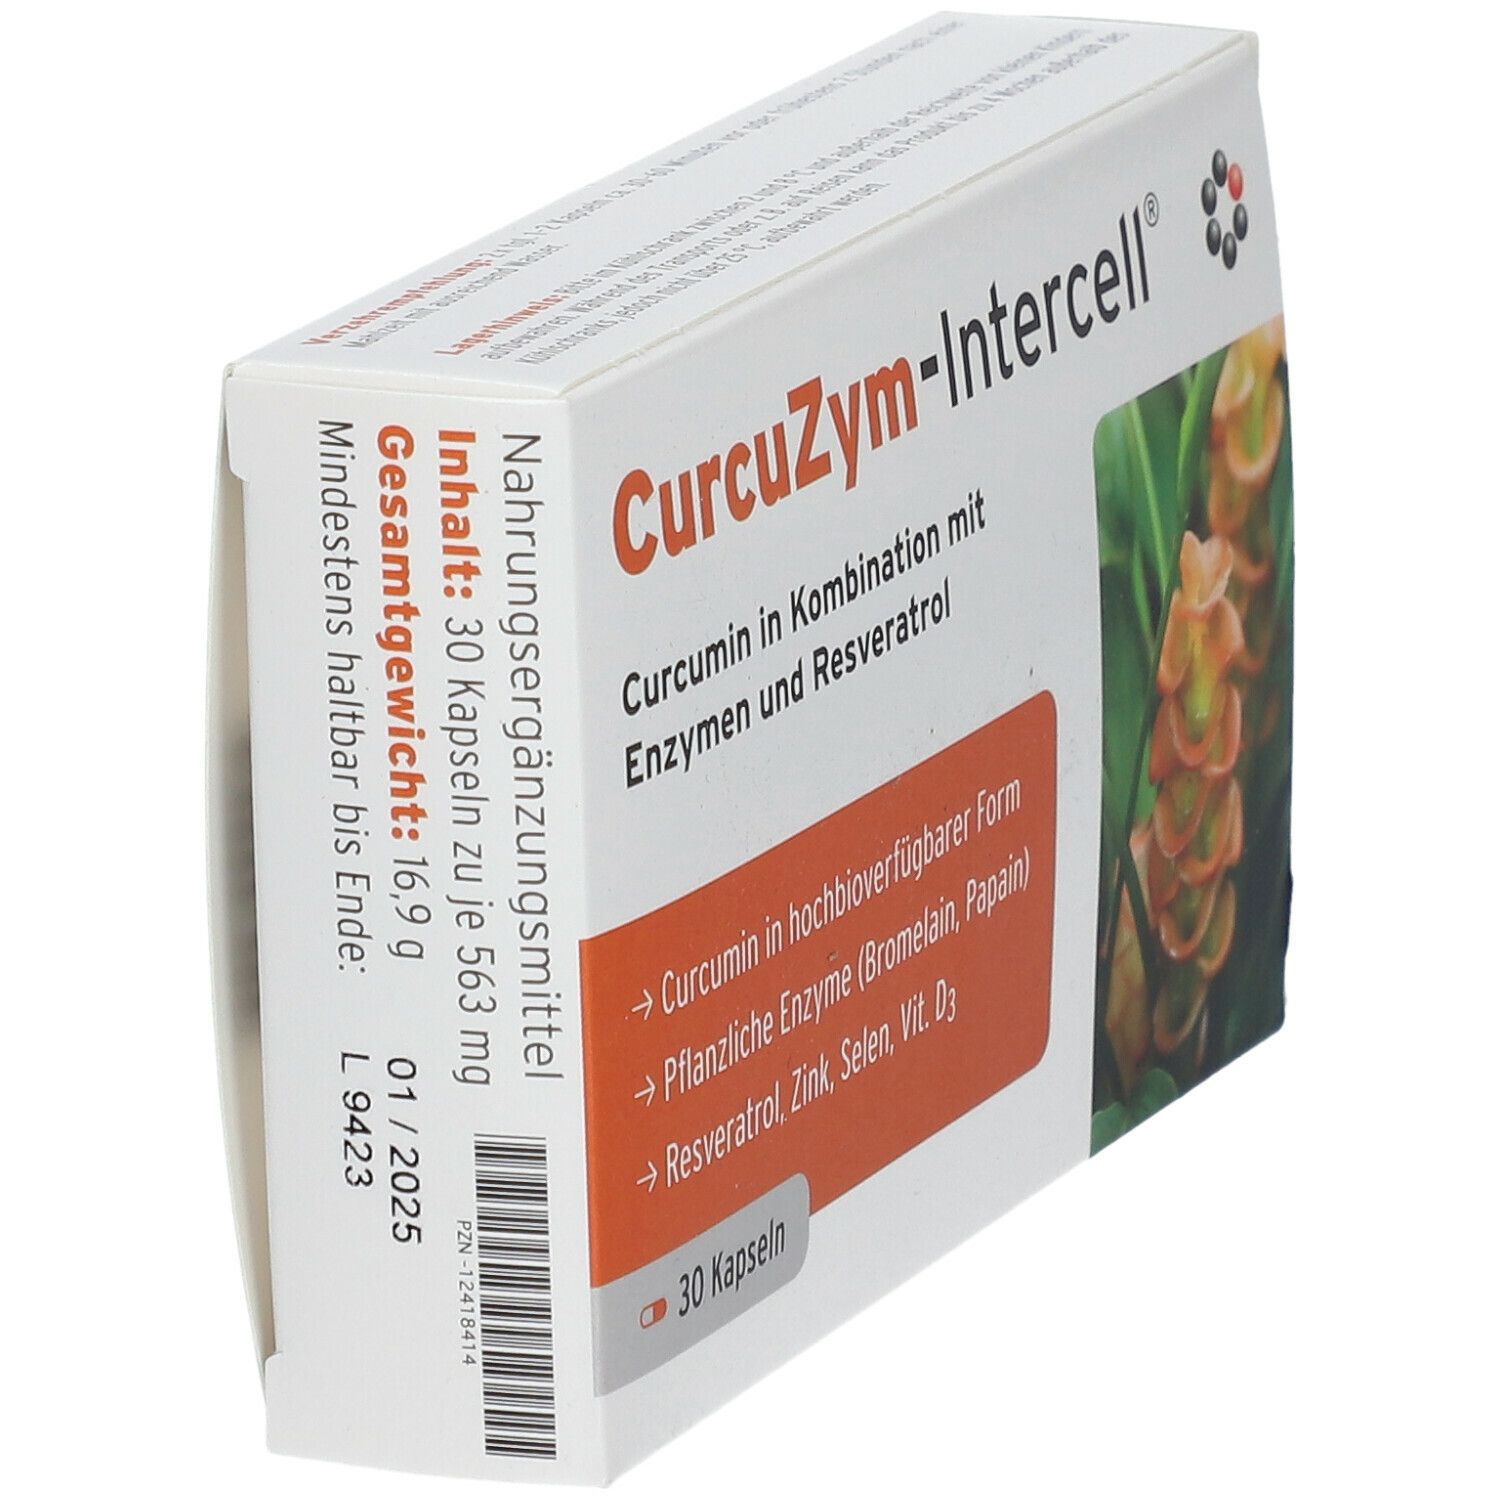 CurcuZym-Intercell®